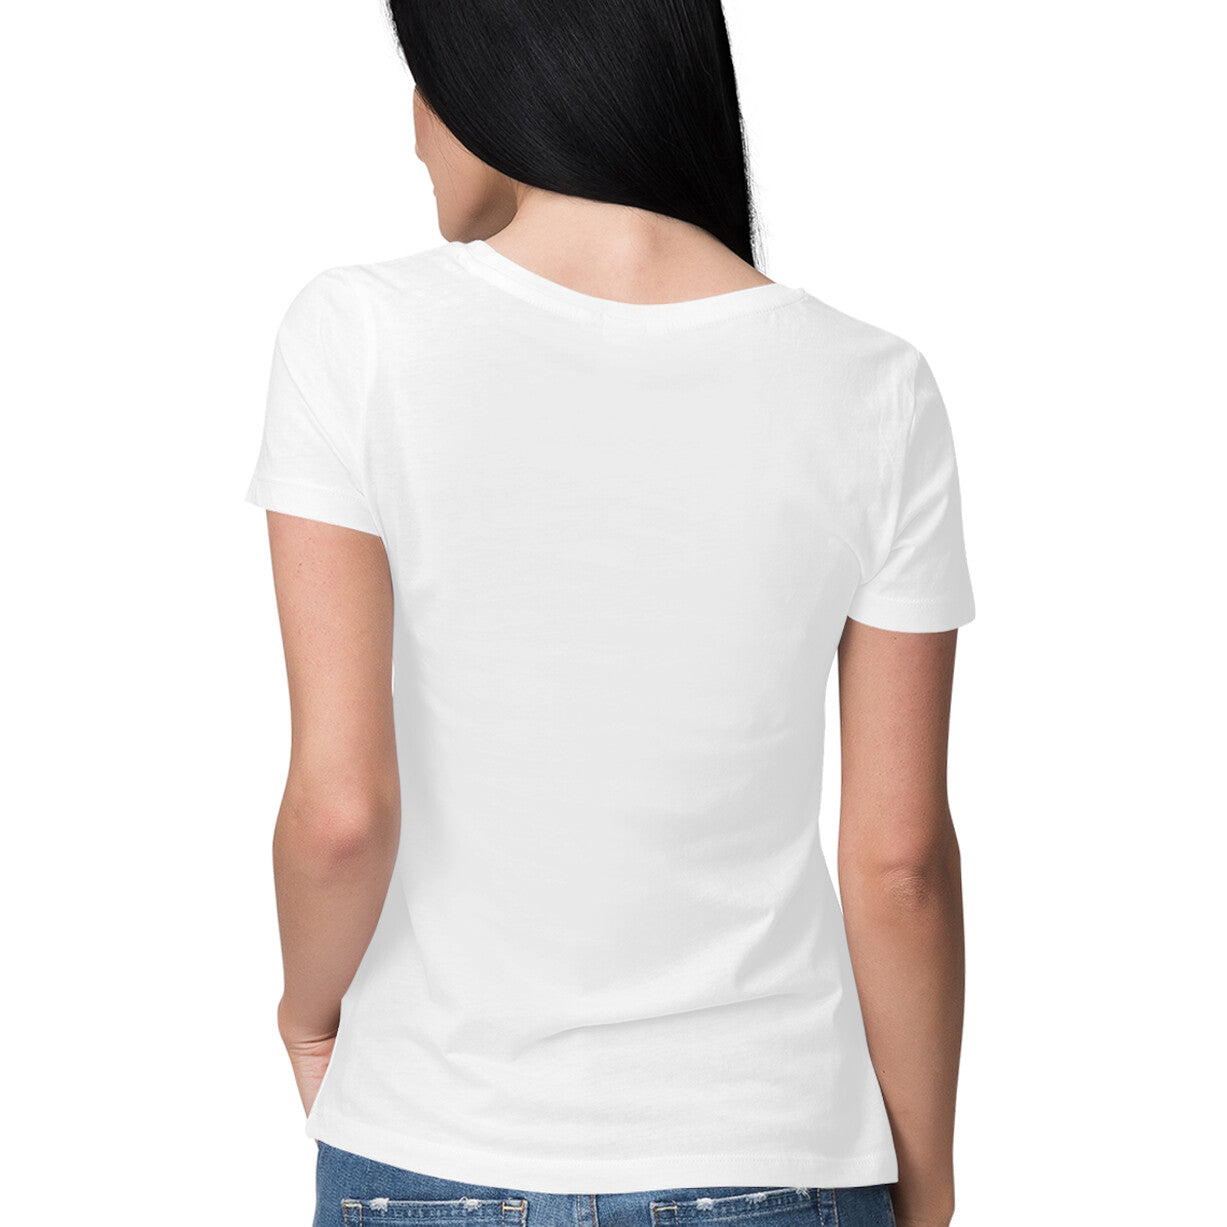 Grainy - Sleek Design T-shirt - Women